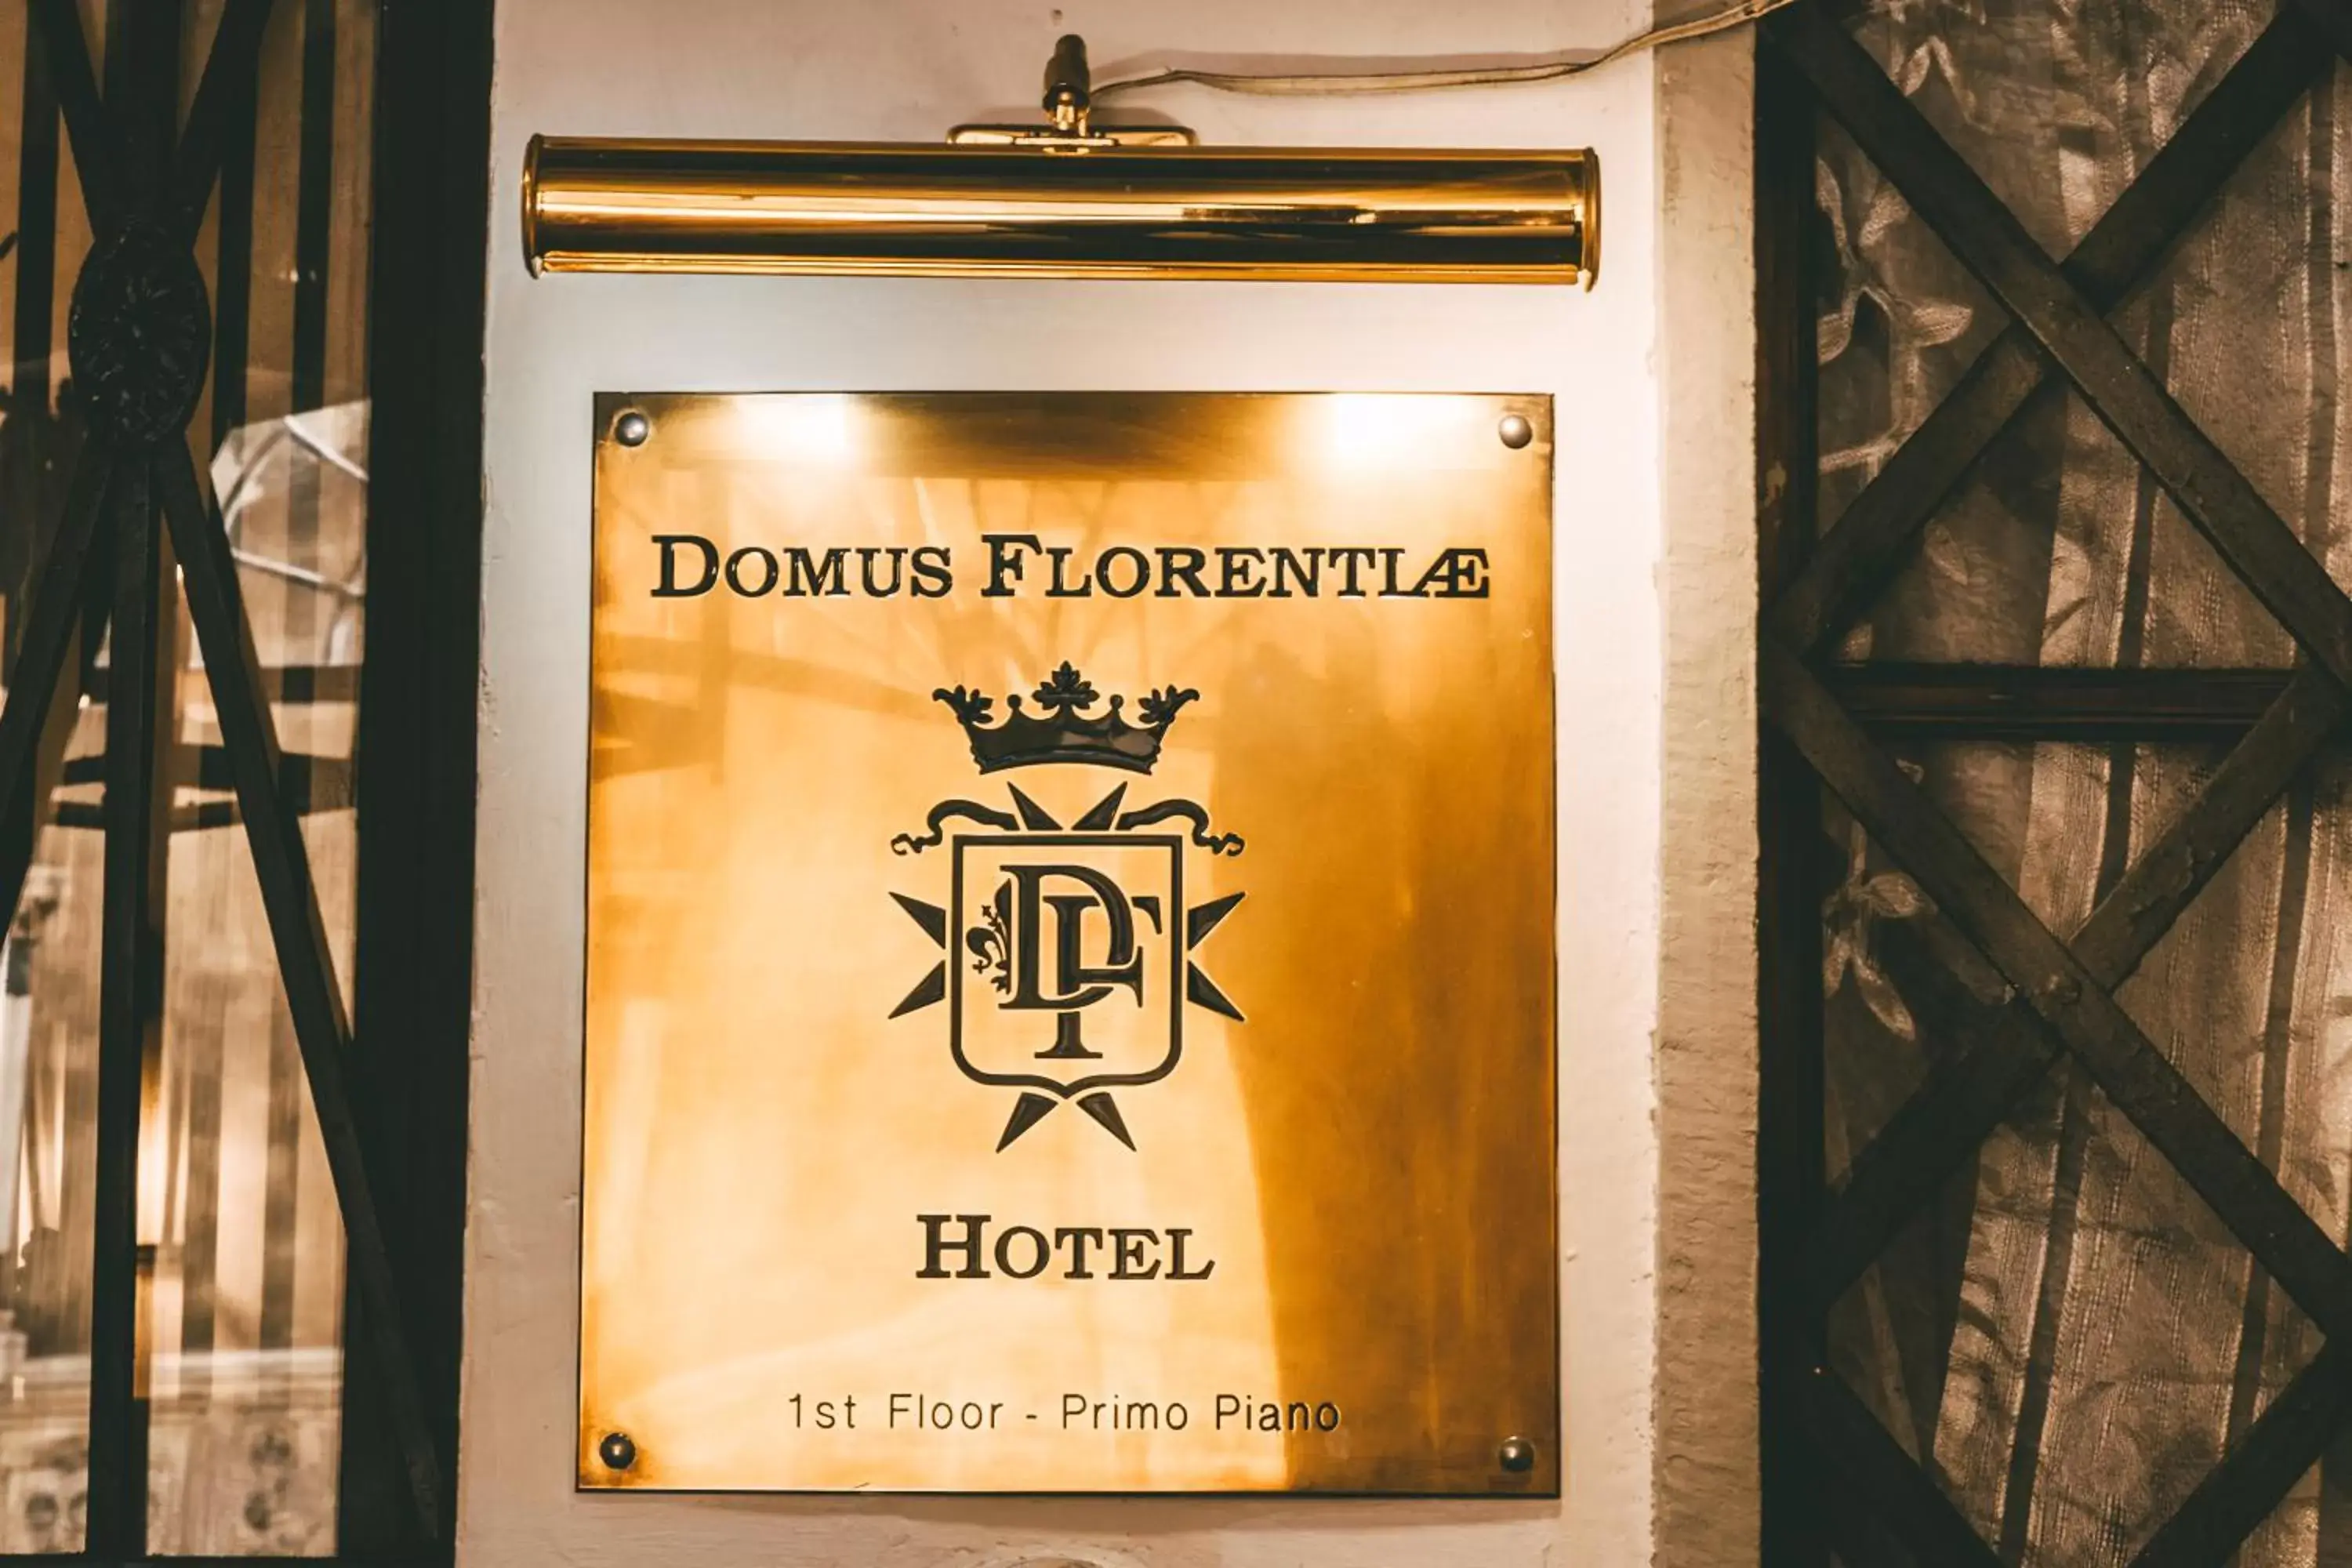 Domus Florentiae Hotel